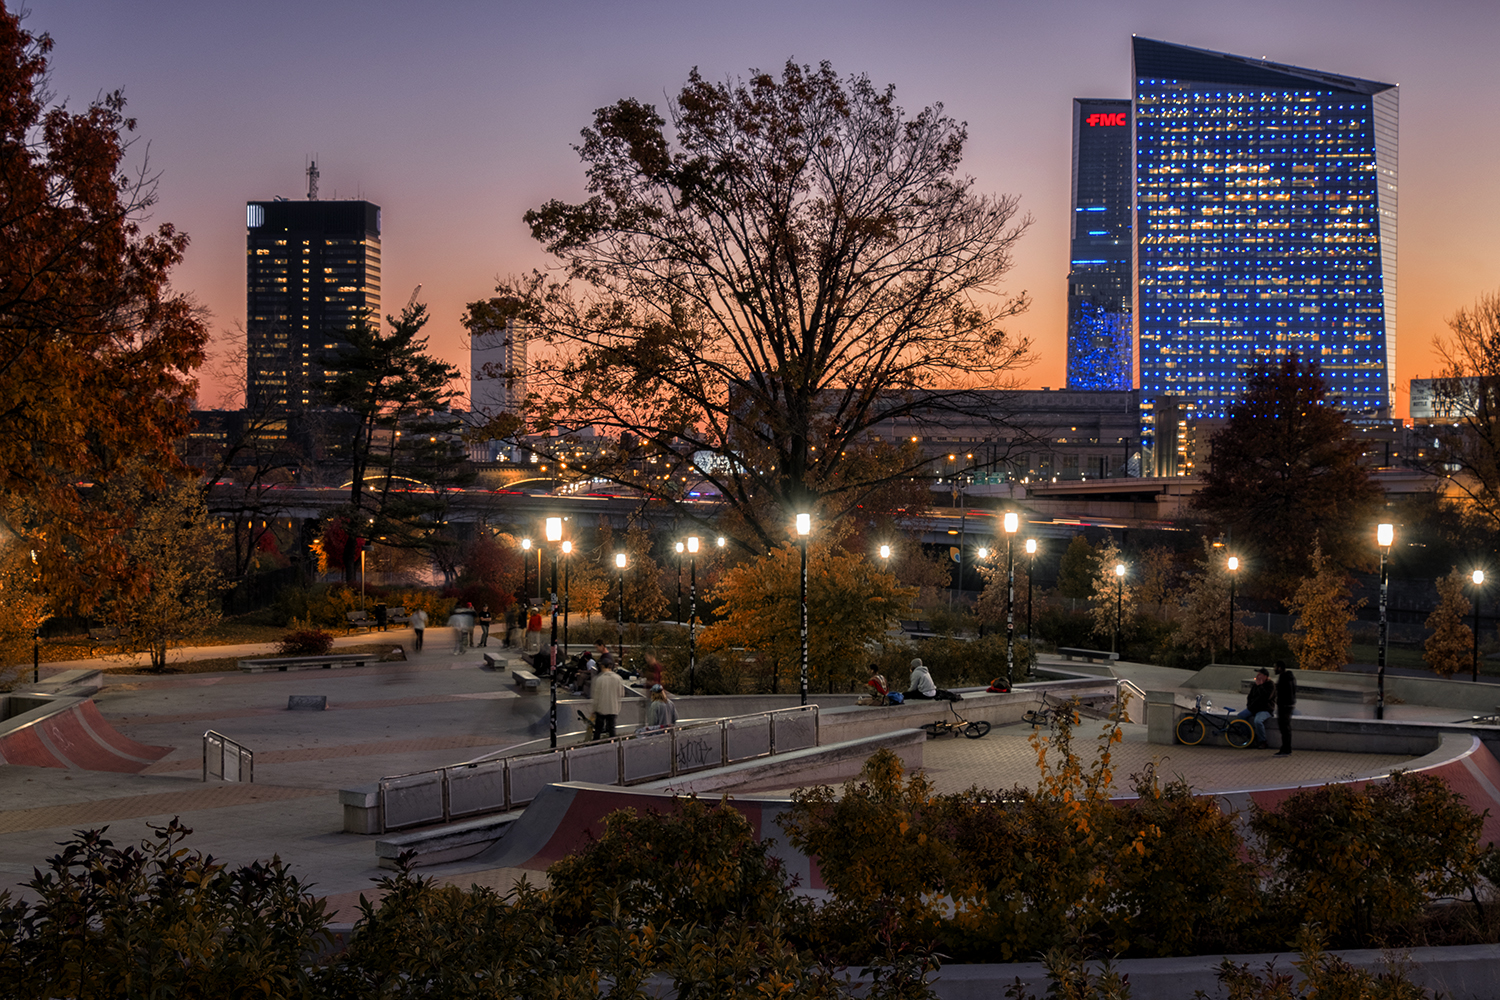 Philadelphia: November sunset at the skate board park.